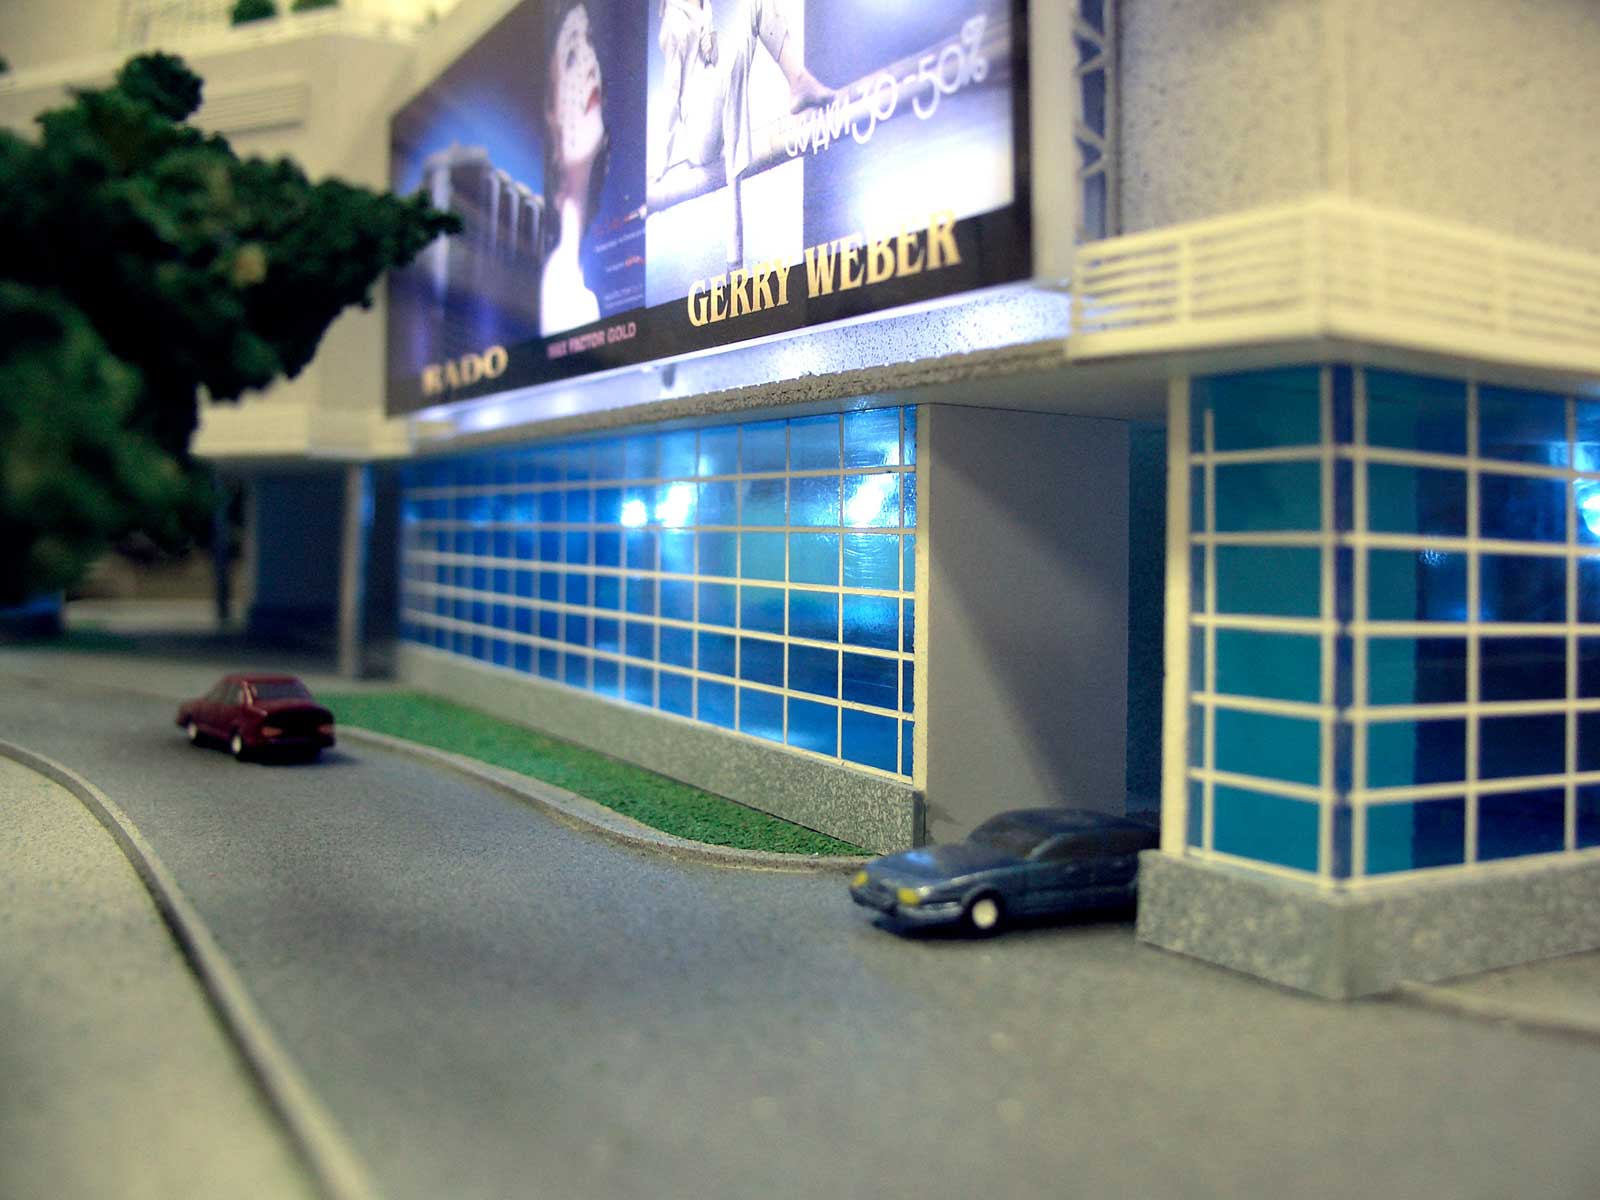 Модель офісно-торгового комплексу біля Палацу Спорту в місті Києві. М 1:200. Розмір підмакетніка 80х100 см.